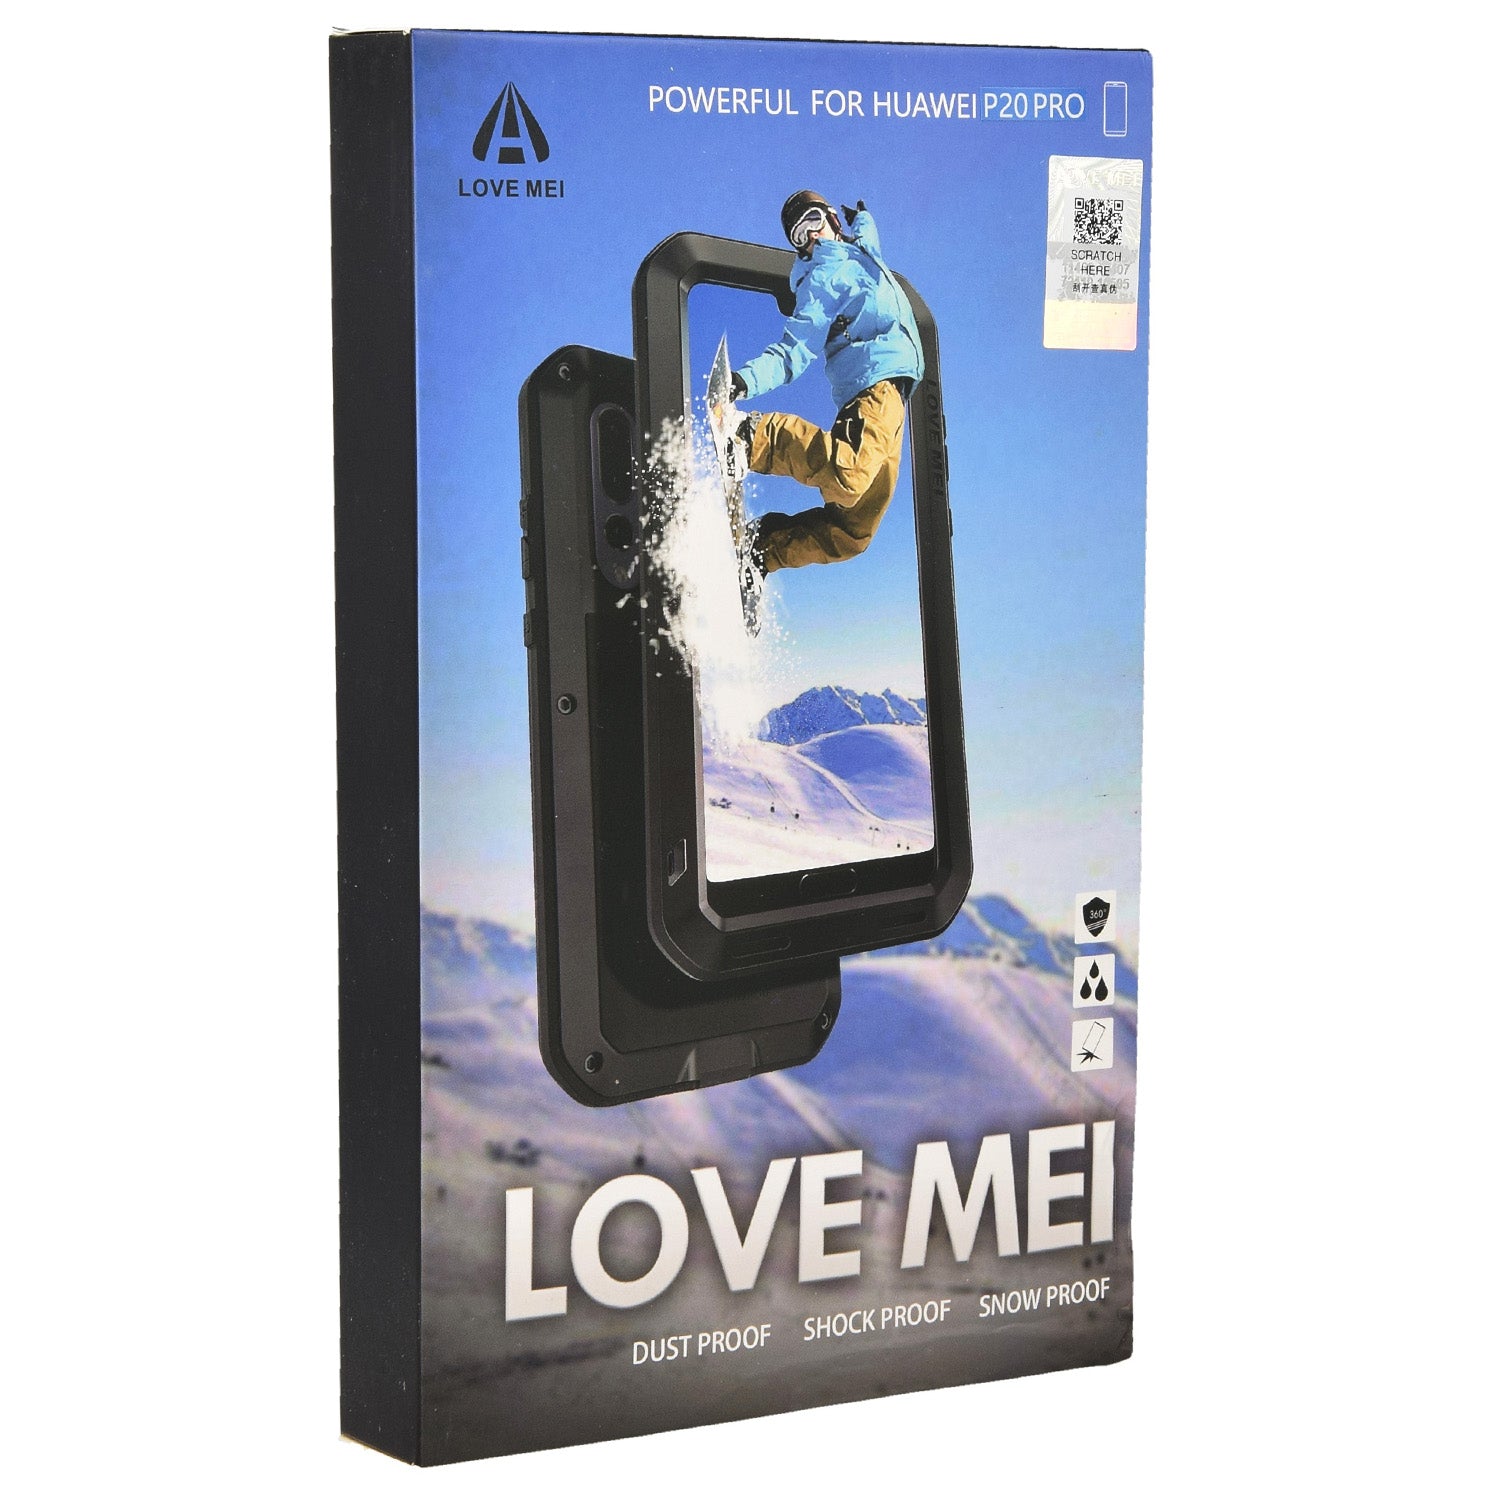 Gepanzerte Schutzhülle mit Glas für Huawei P20 Pro, Love Mei Powerful, Schwarz